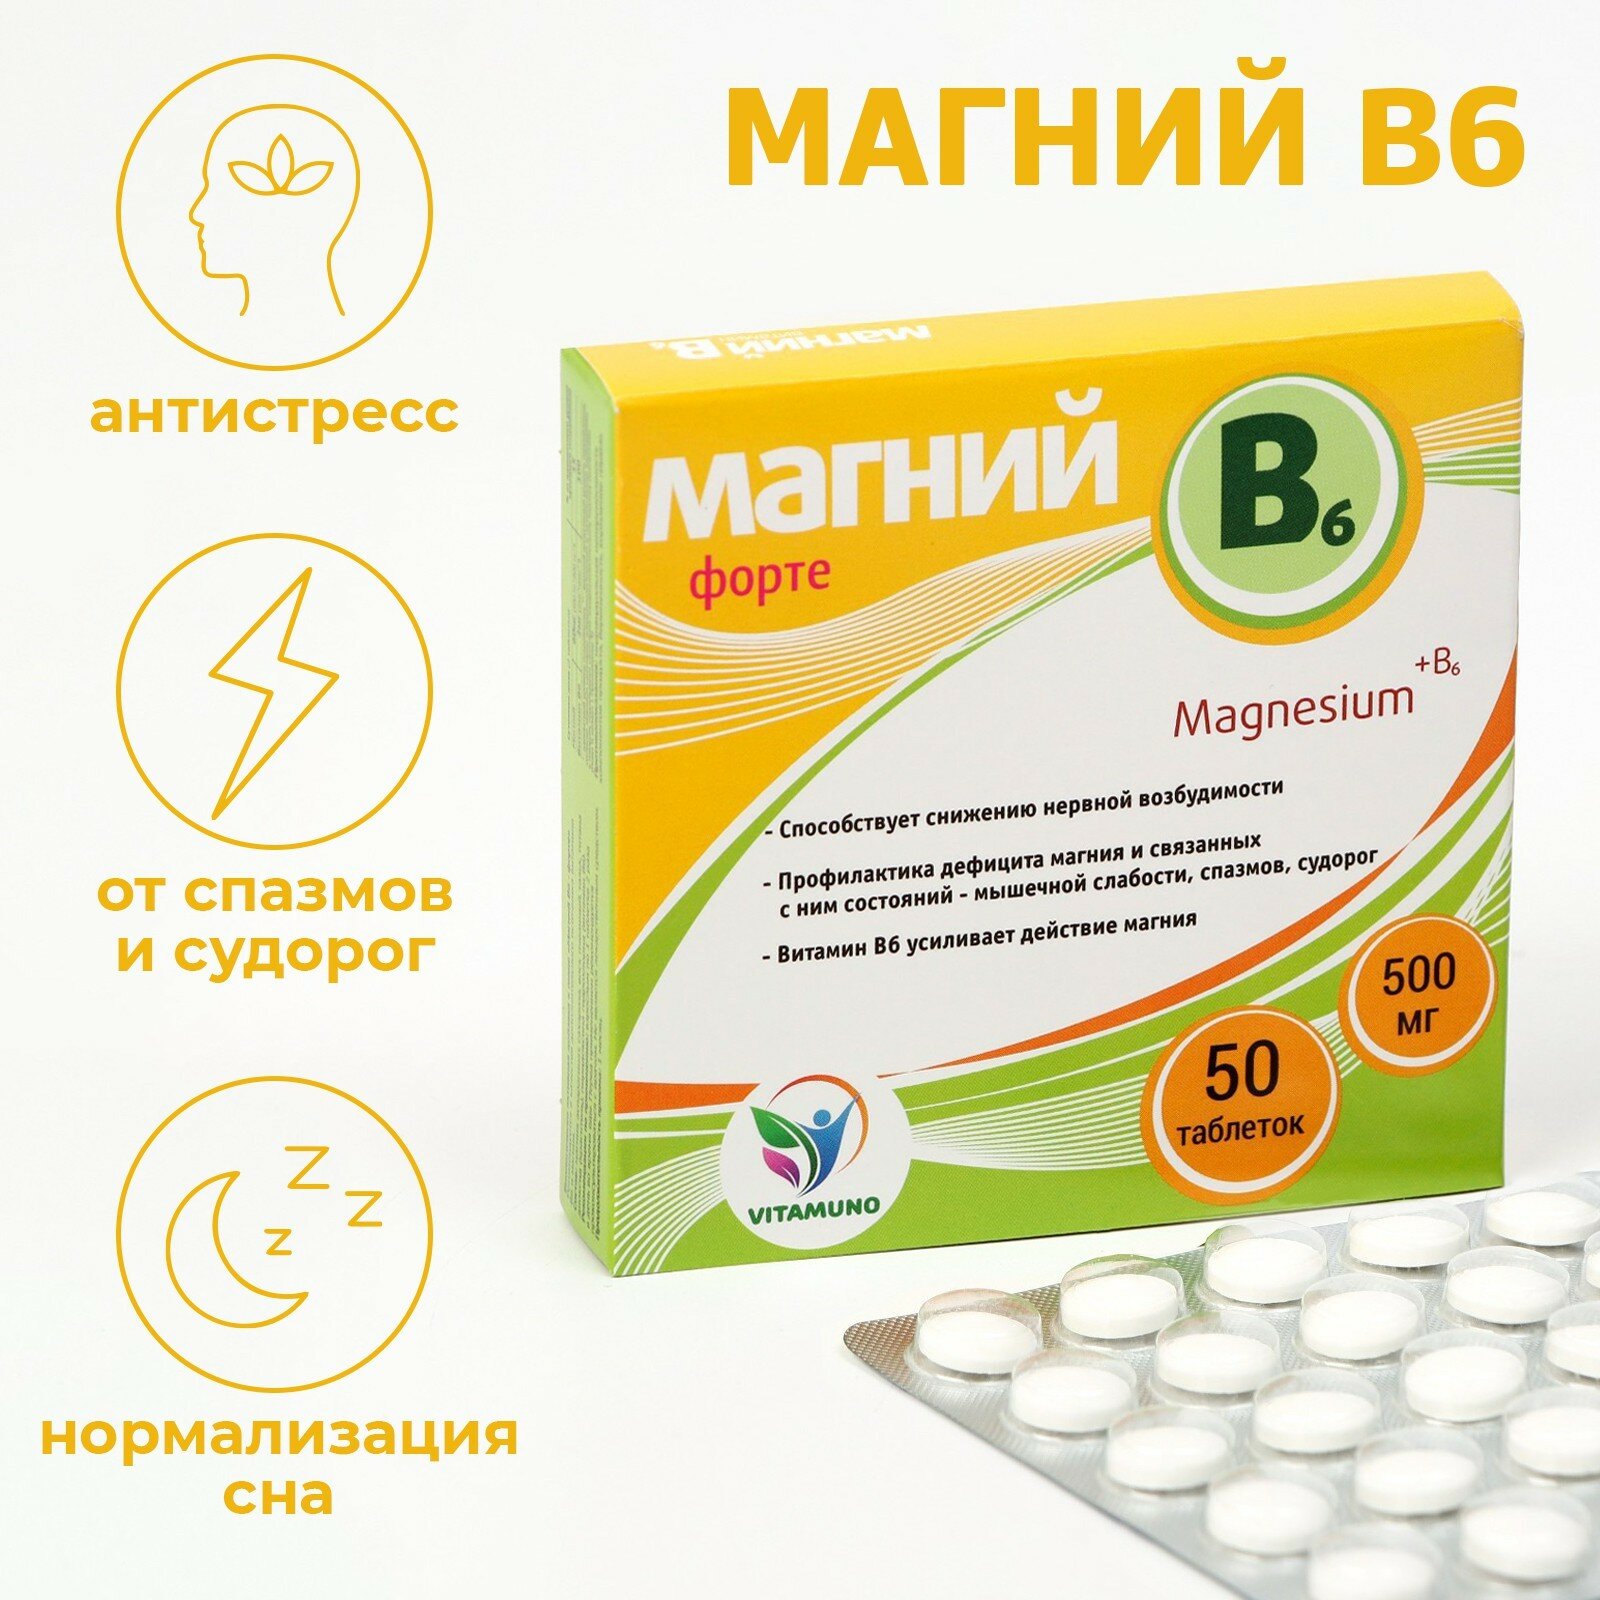 Магний B6 форте, 50 таблеток по 500 мг 6897573